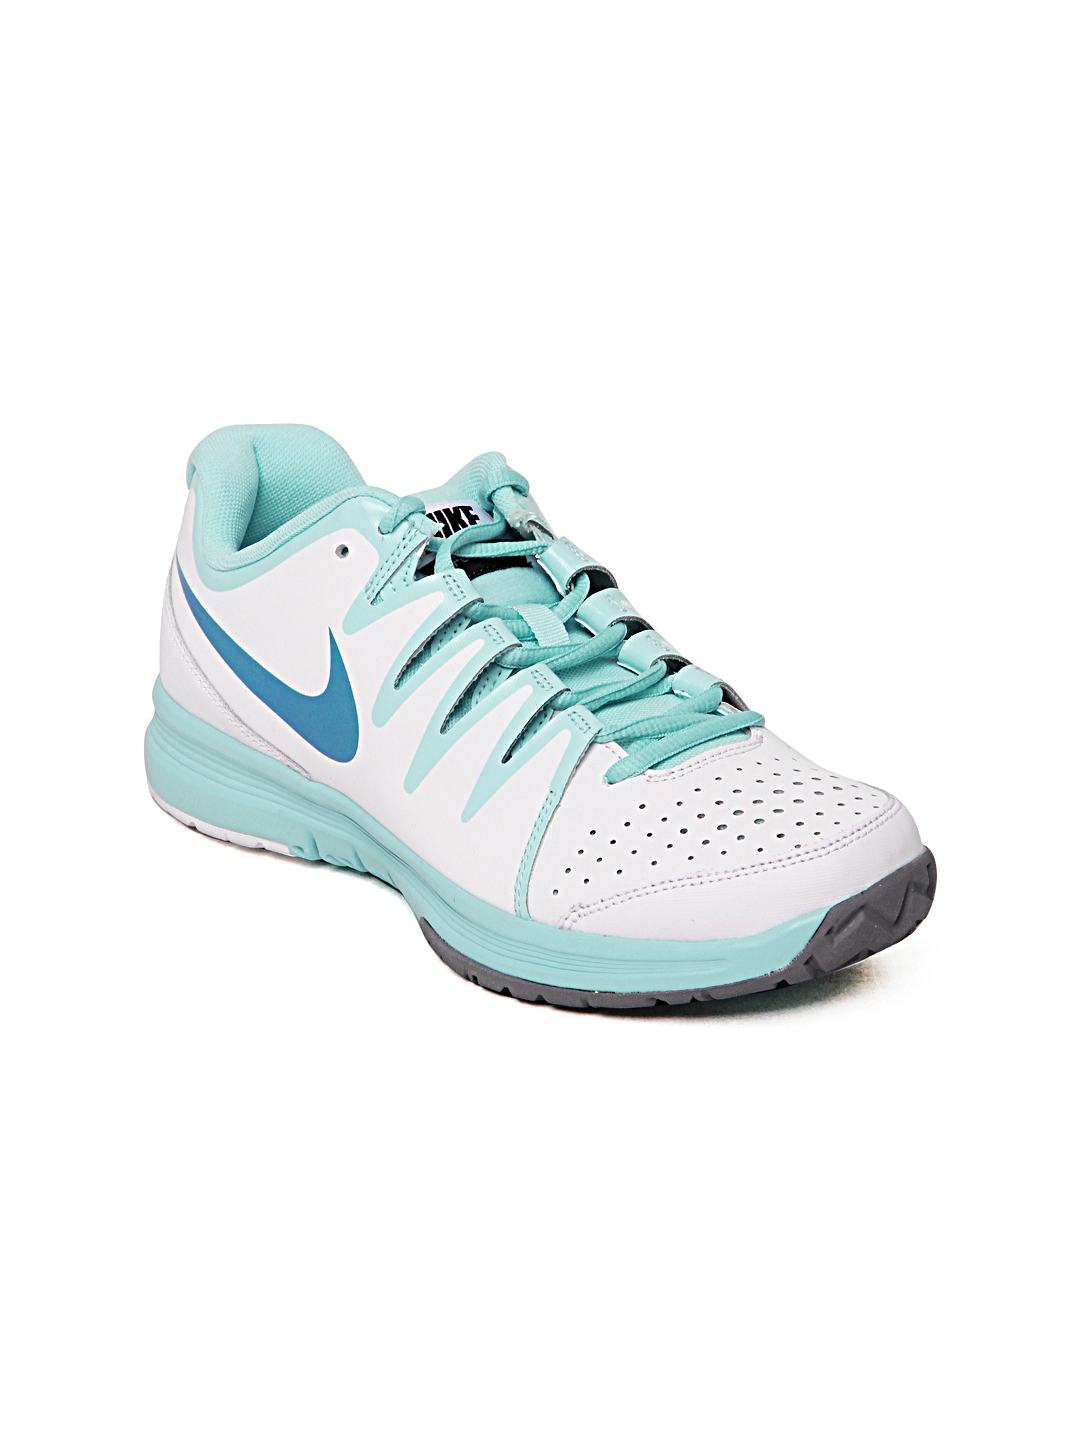 Buy Nike Women White Vapor Court Sports Shoes Sports Shoes for Women